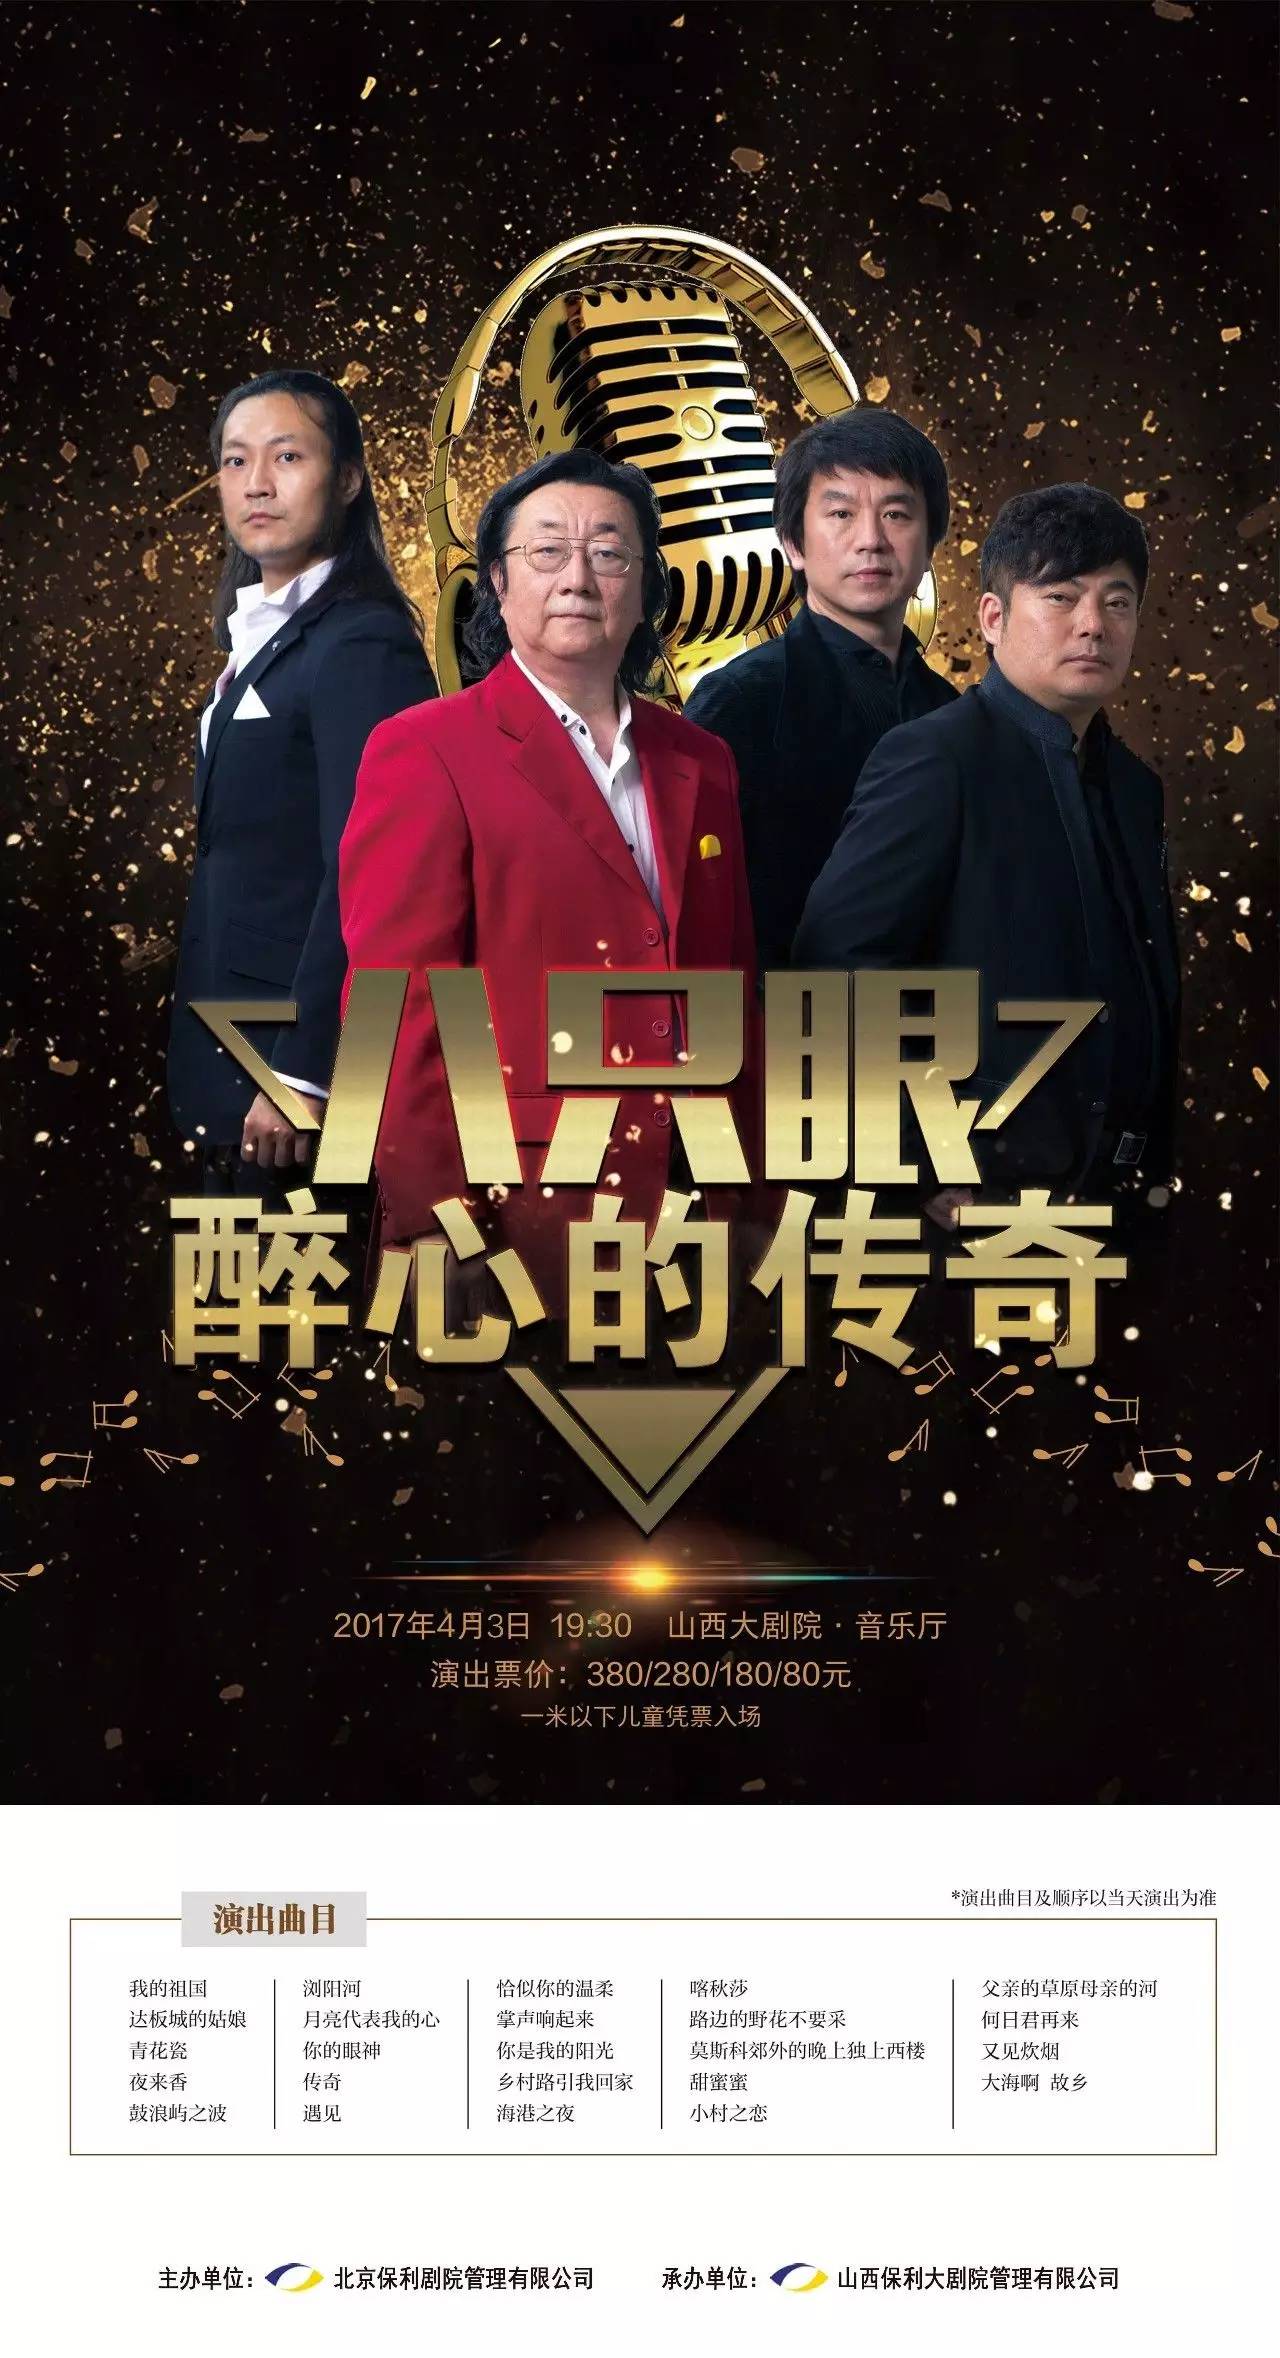 【音乐经典】中国殿堂级男声组合"八只眼演唱组"金曲欣赏